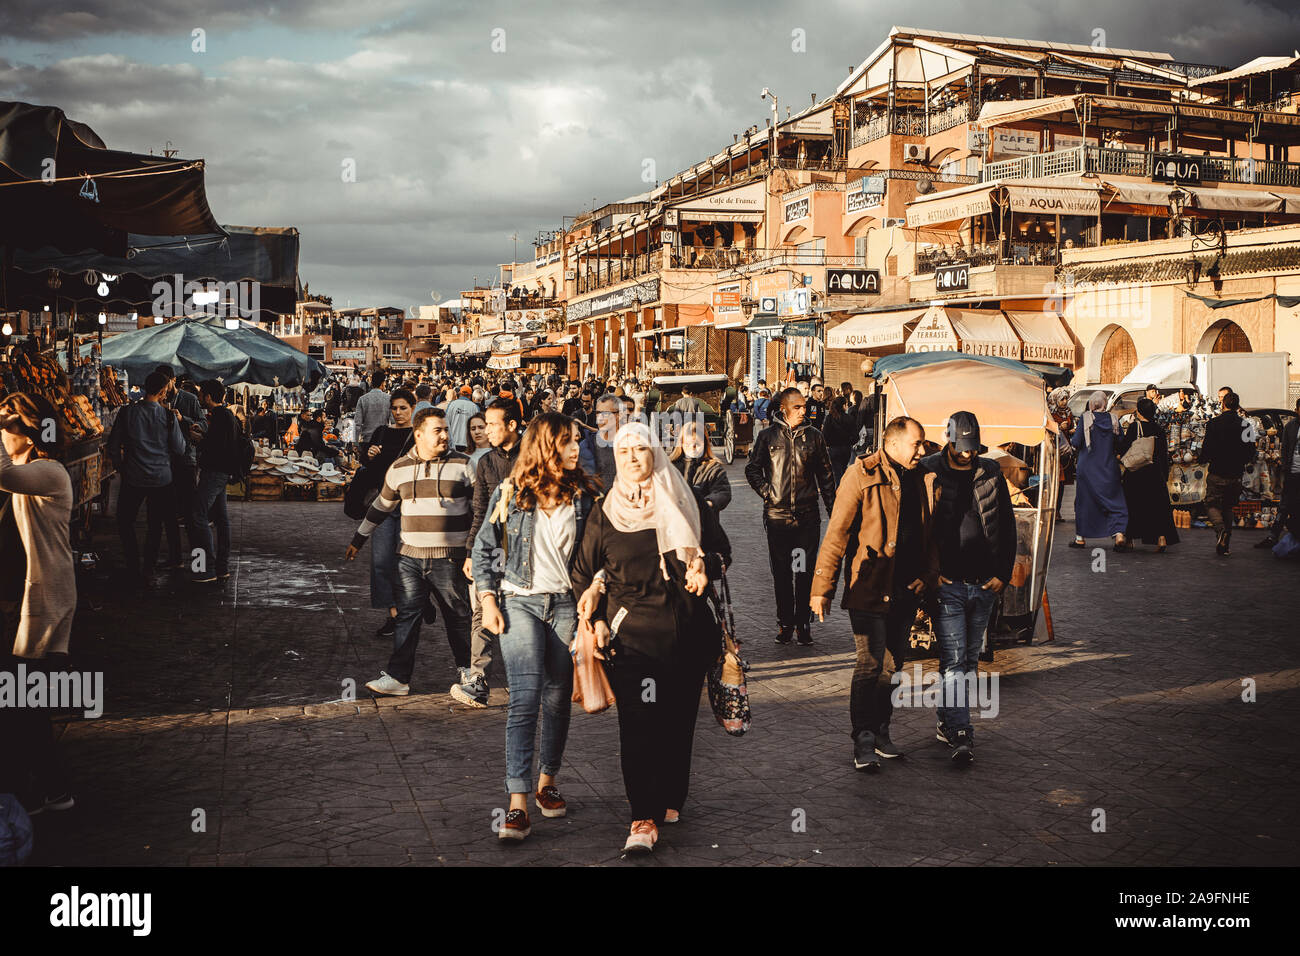 La gente caminando por la plaza de Jamaa El Fna Foto de stock